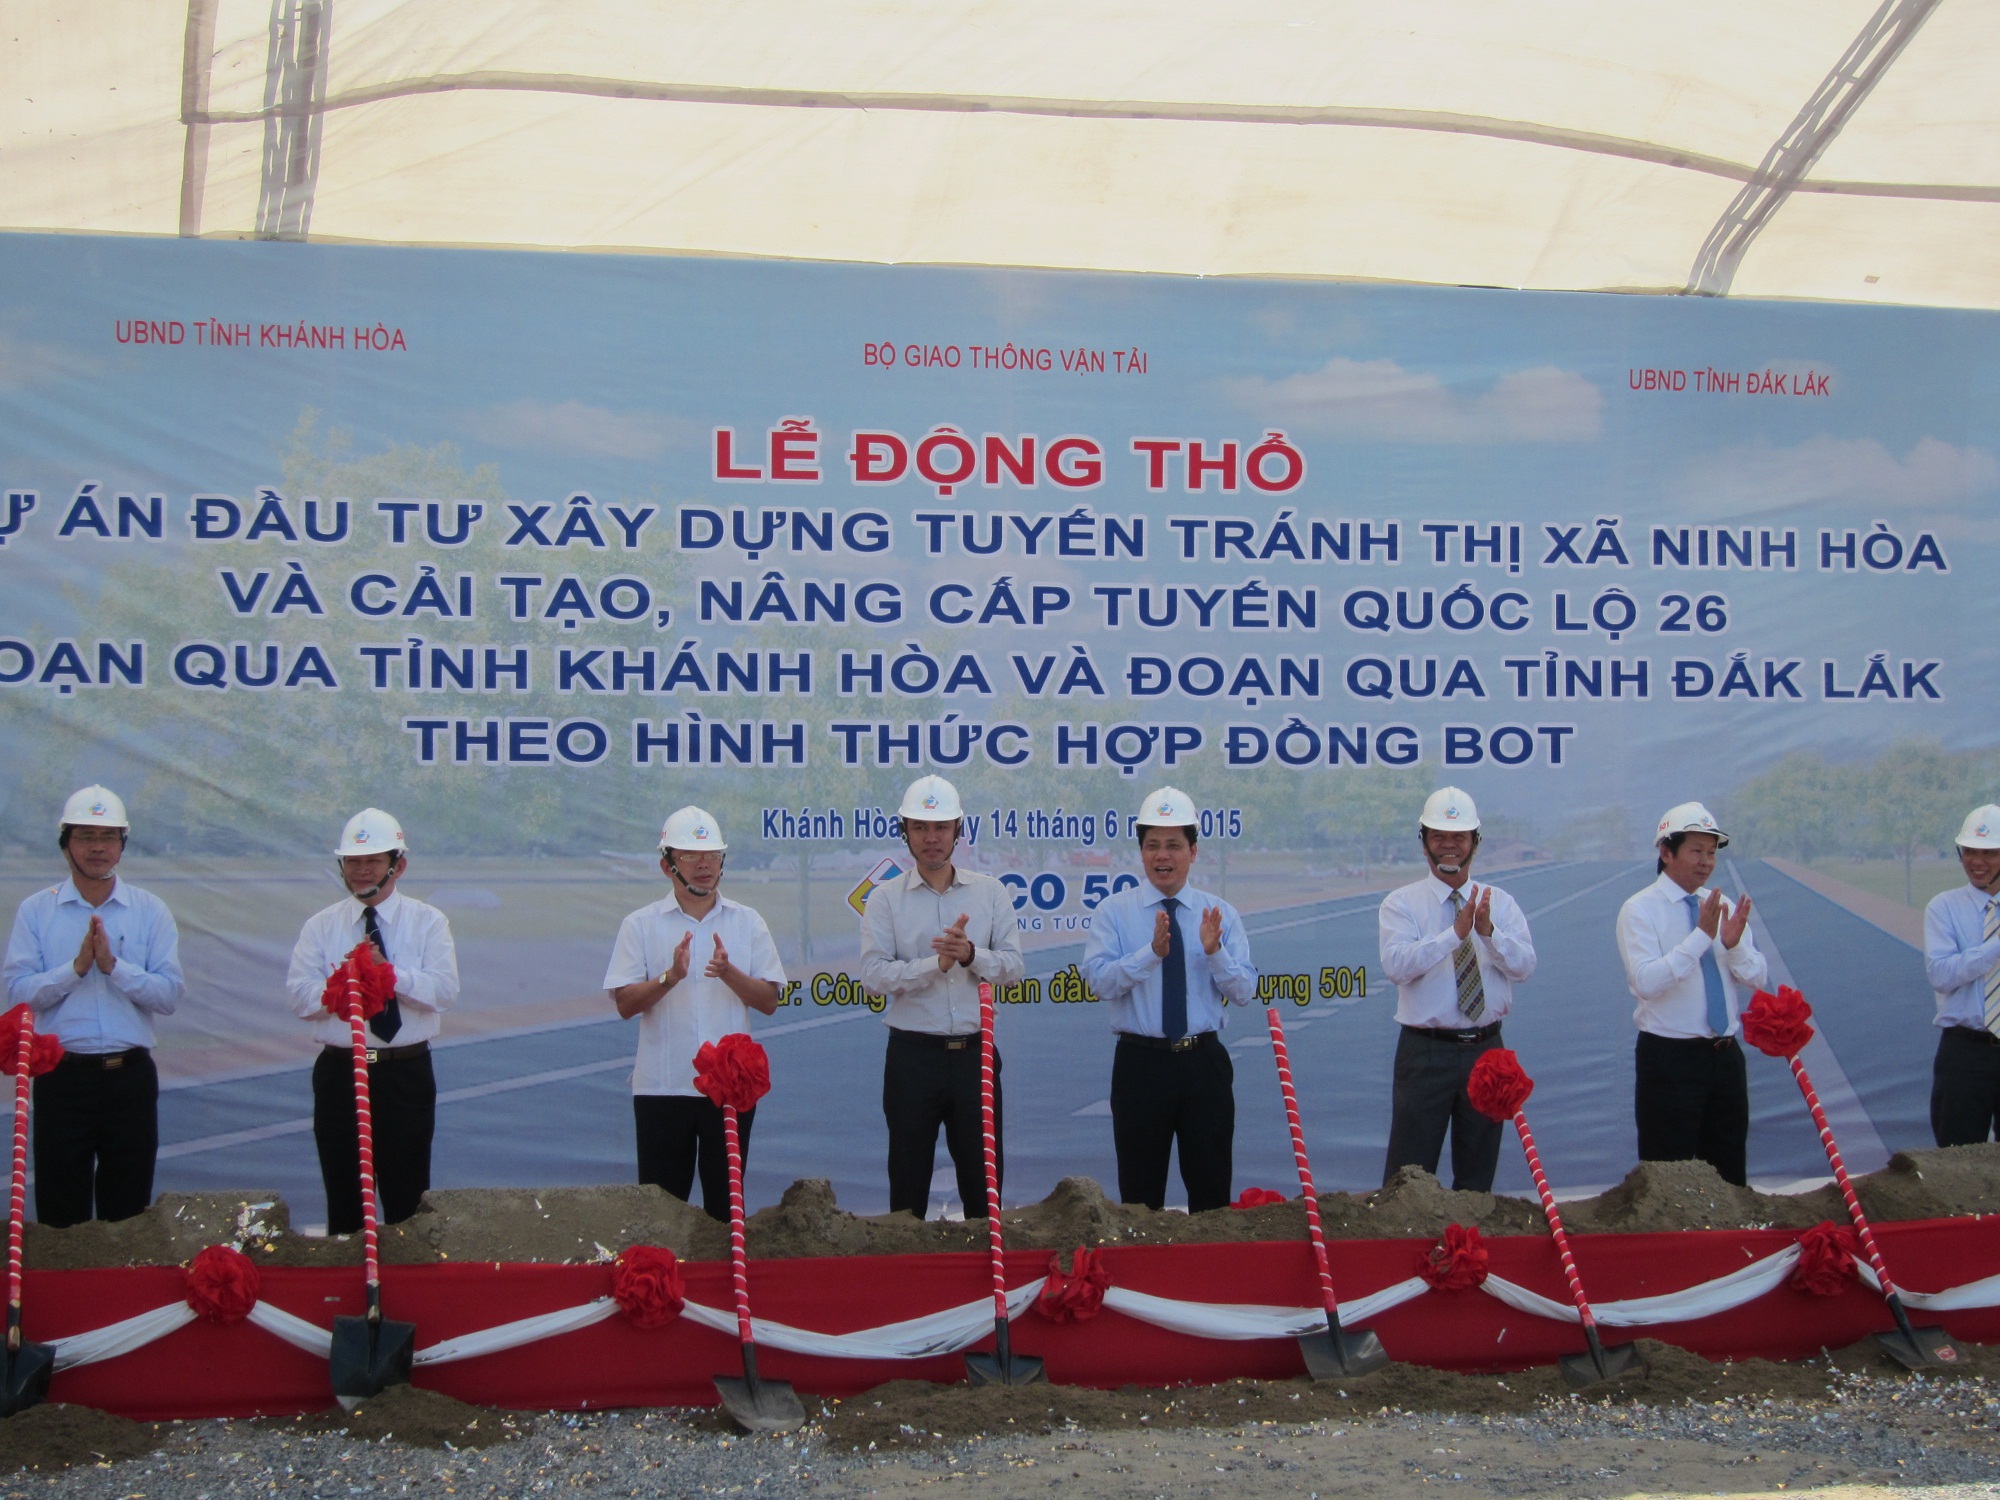 Sở Giao thông vận tải dự Lễ Động thổ Dự án đầu tư Quốc lộ 26 tại thị xã Ninh Hòa, tỉnh Khánh Hòa